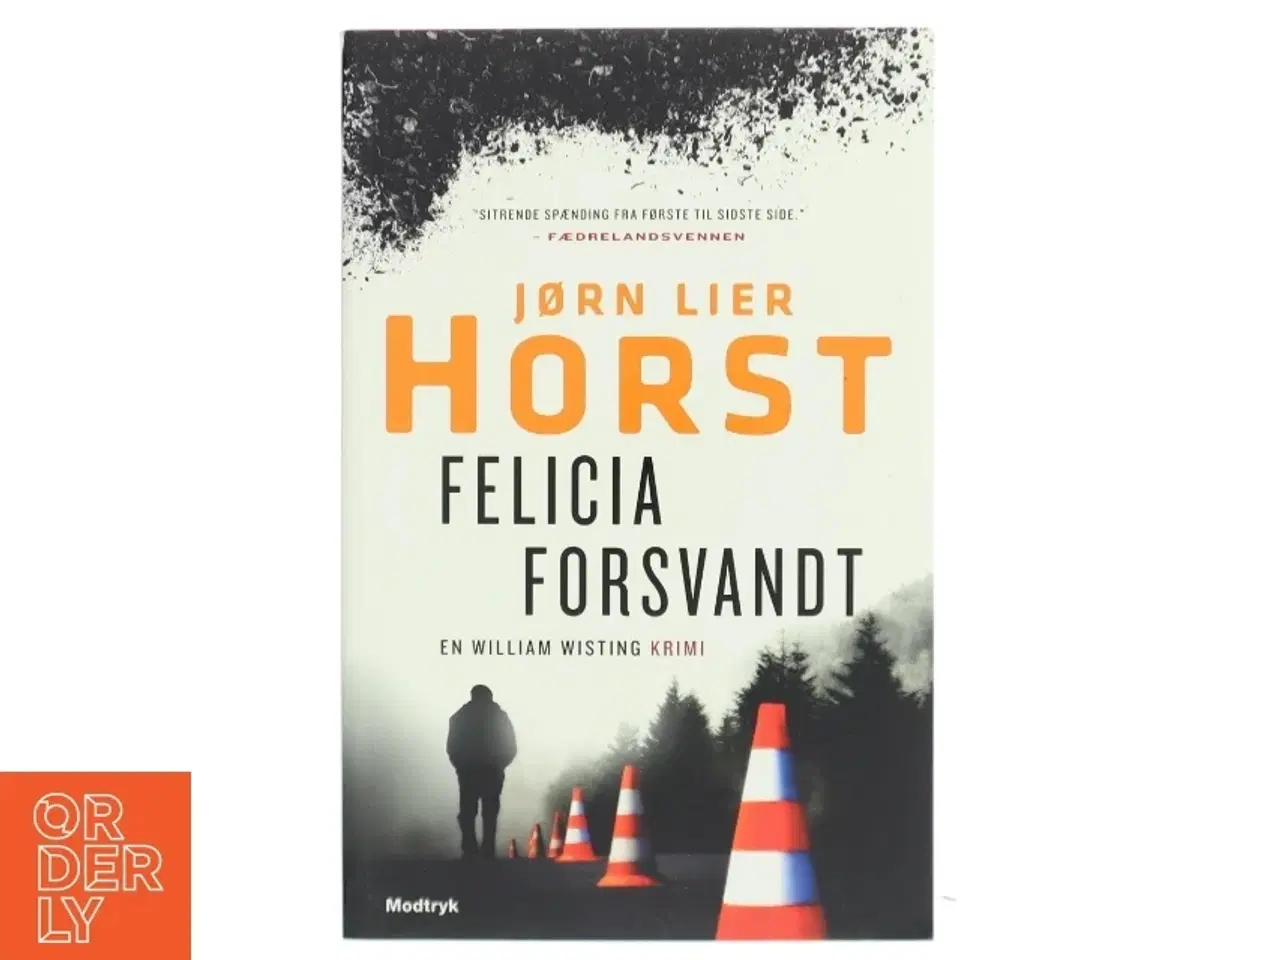 Billede 1 - 'Felicia forsvandt' af Jørn Lier Horst (bog)